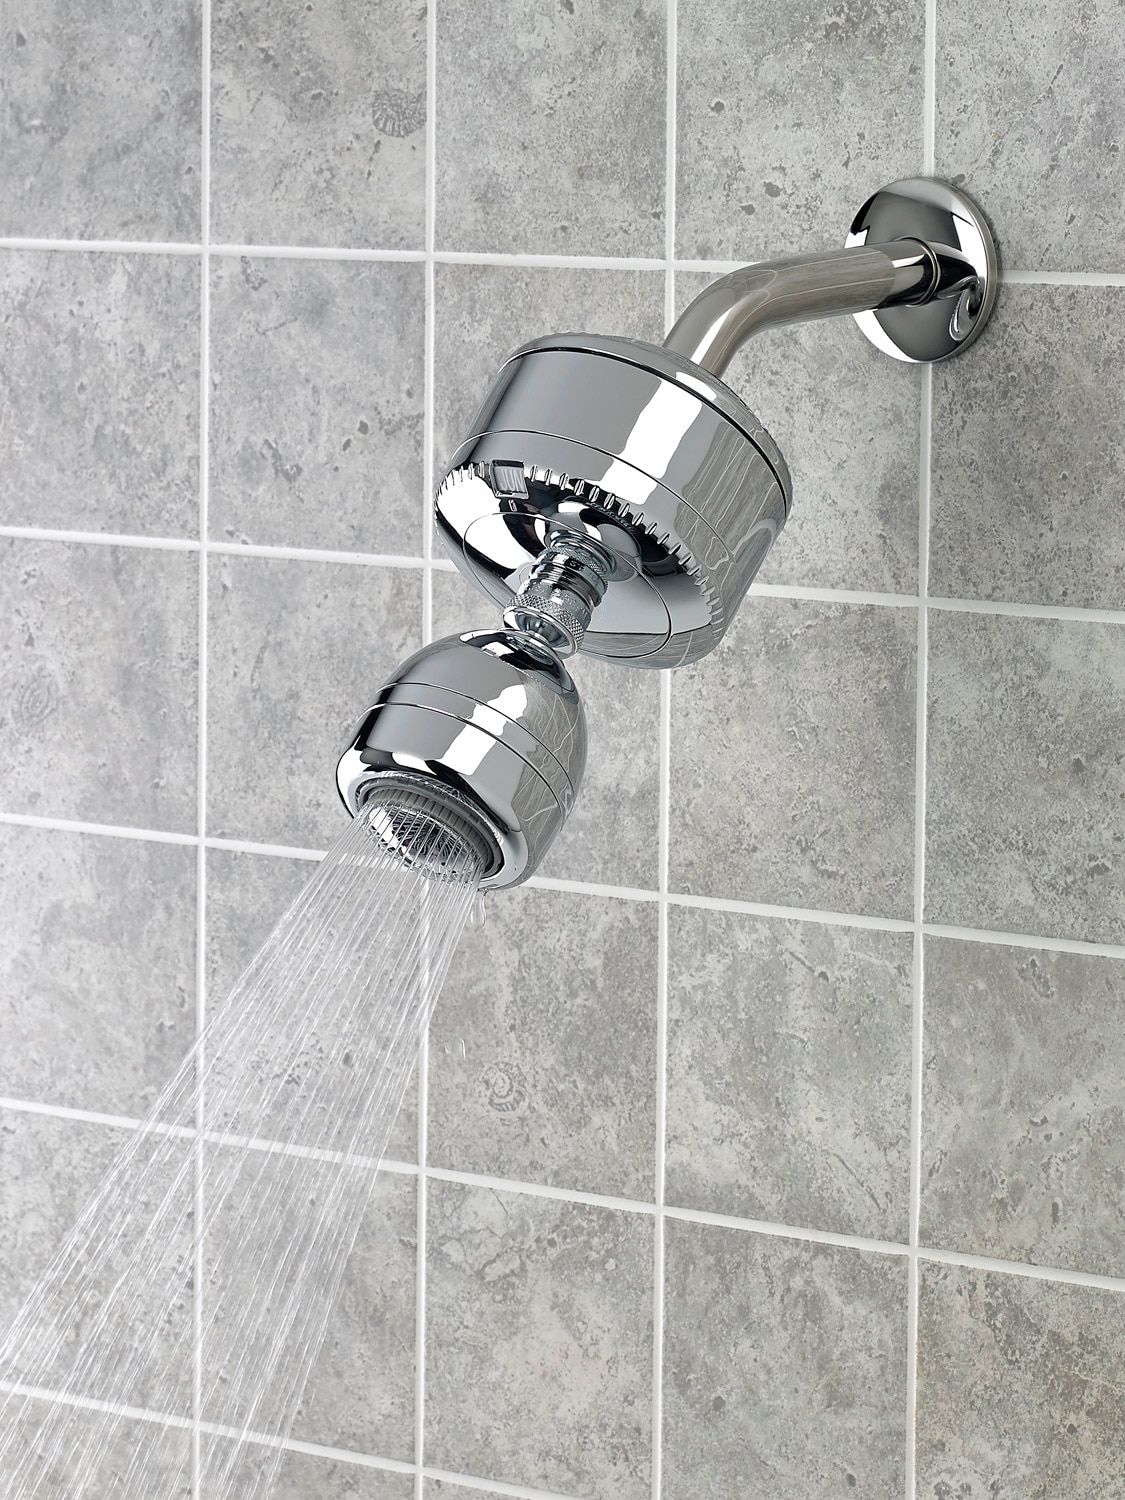 Avedia shower filter for hard water tap softener bath bathroom